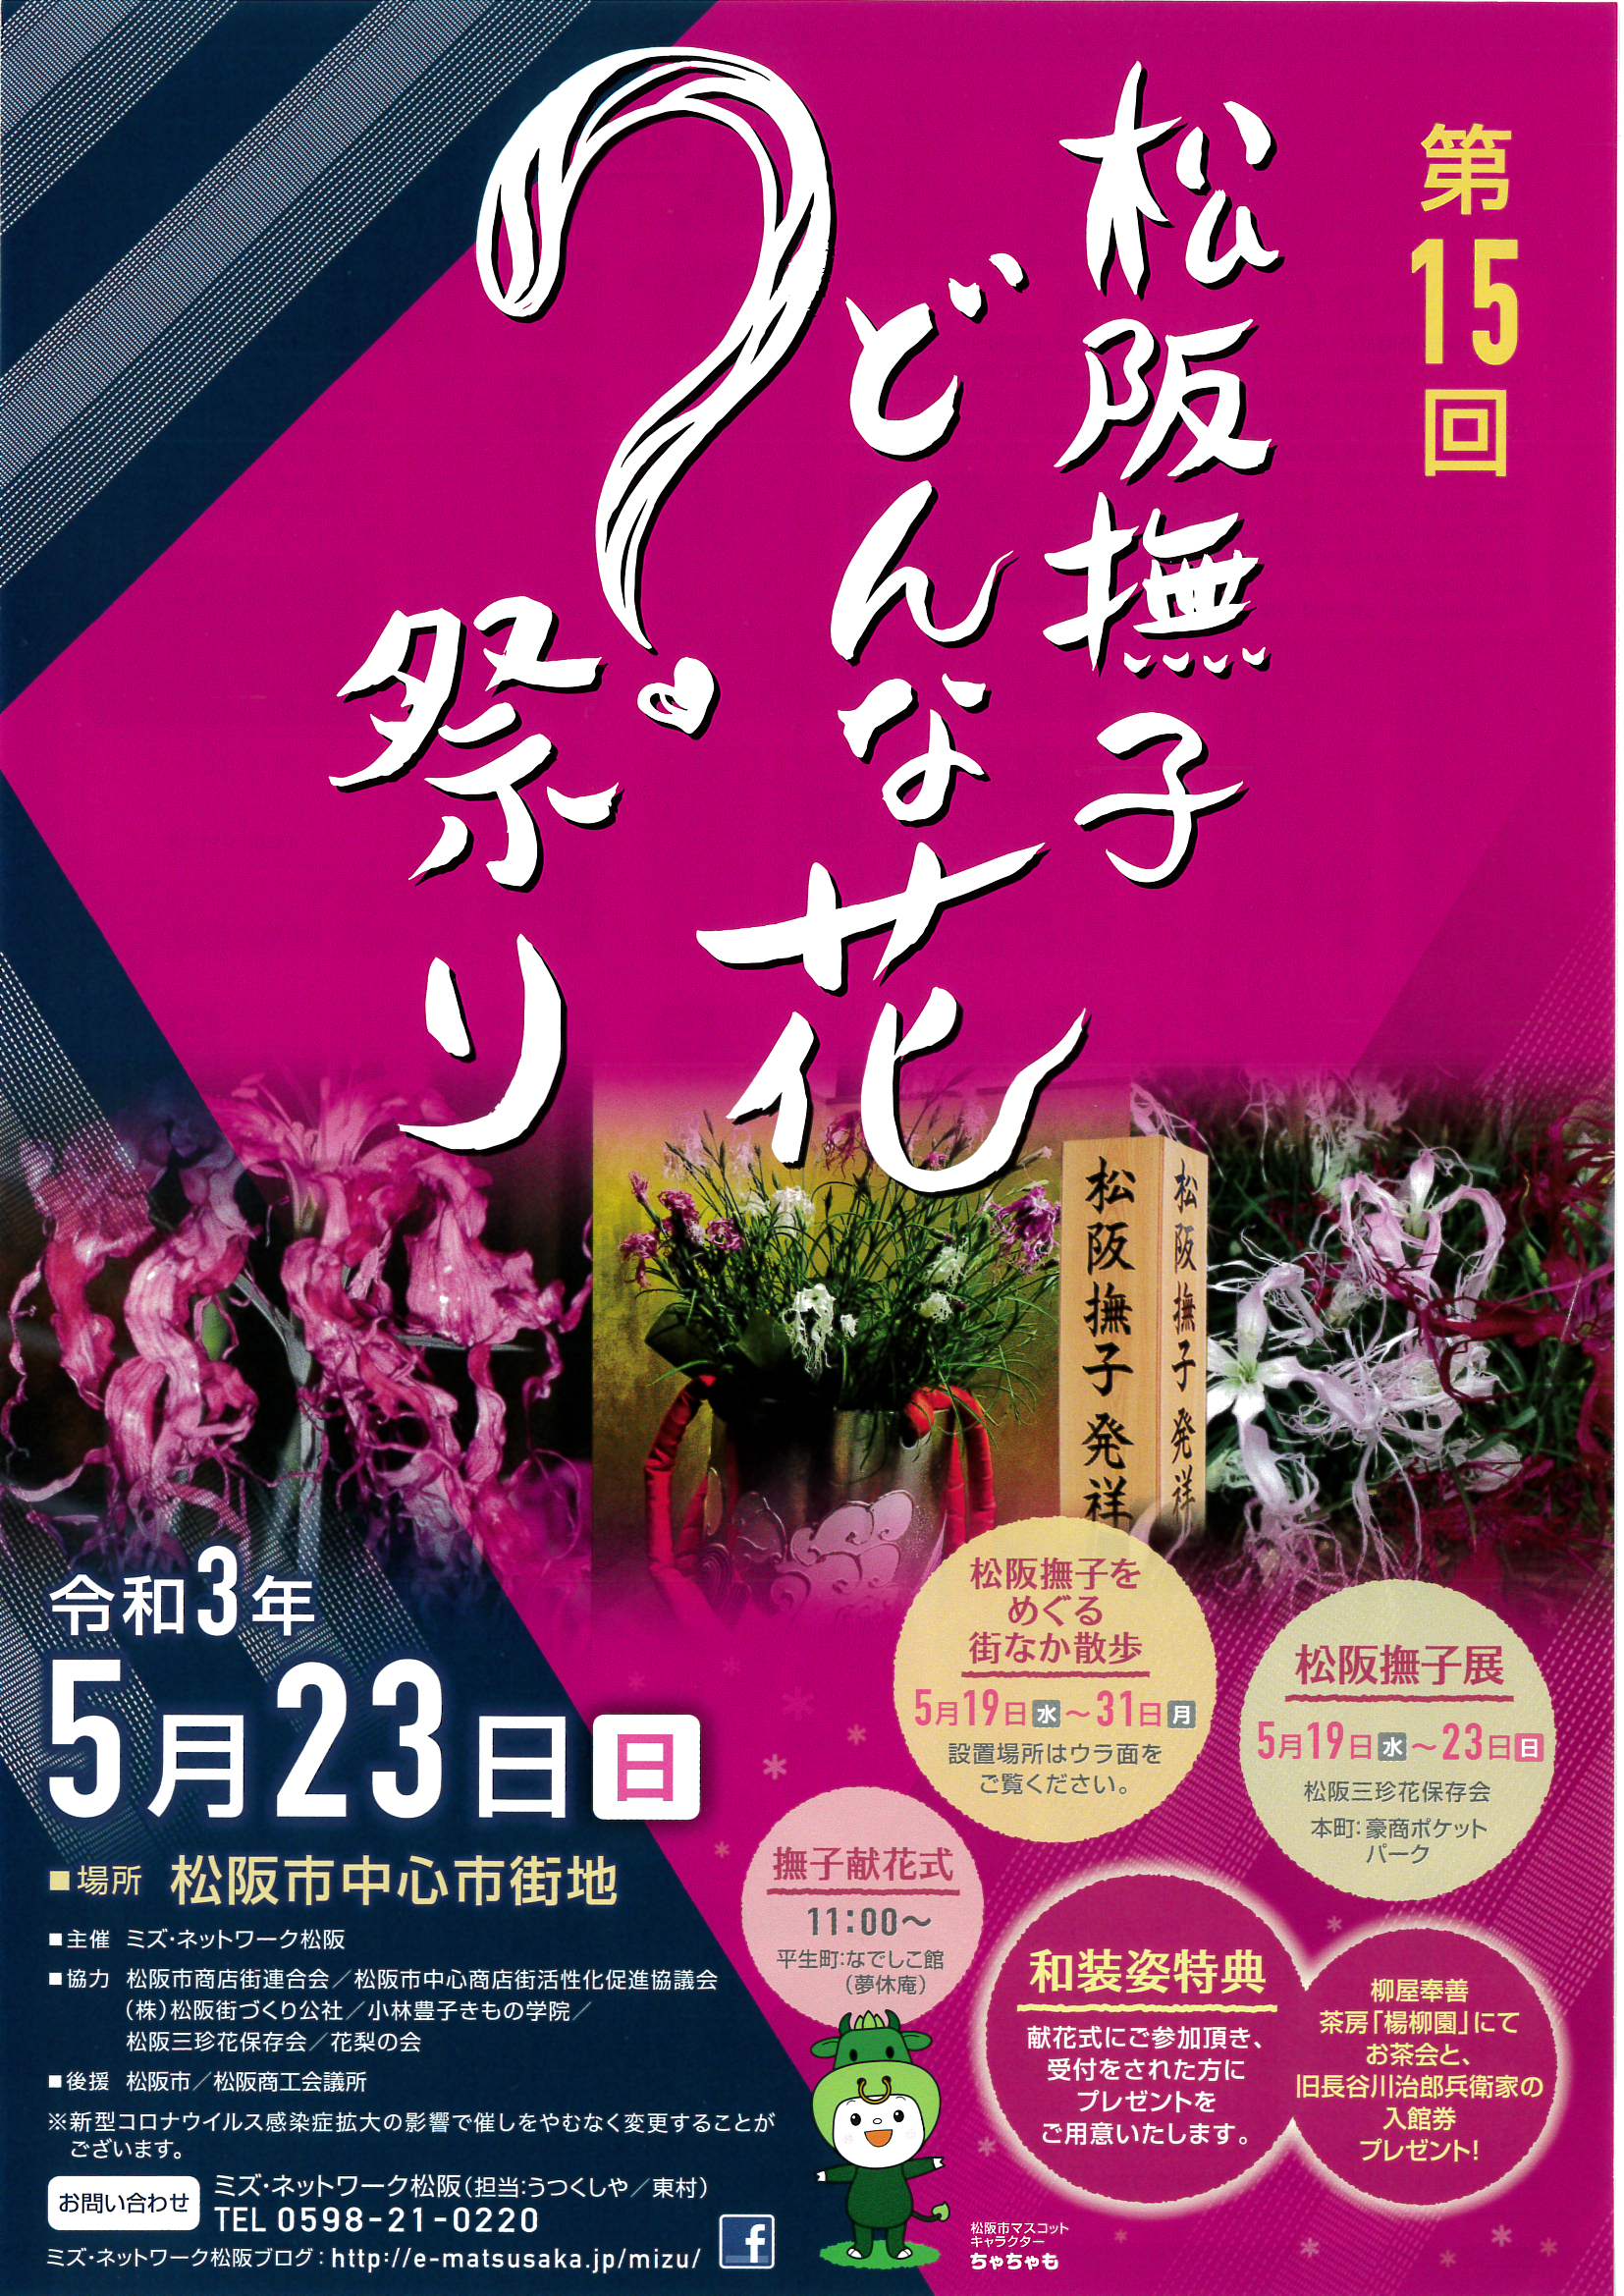 21年5月23日 日 第15回松阪撫子どんな花 祭り 観光情報 松阪市観光協会